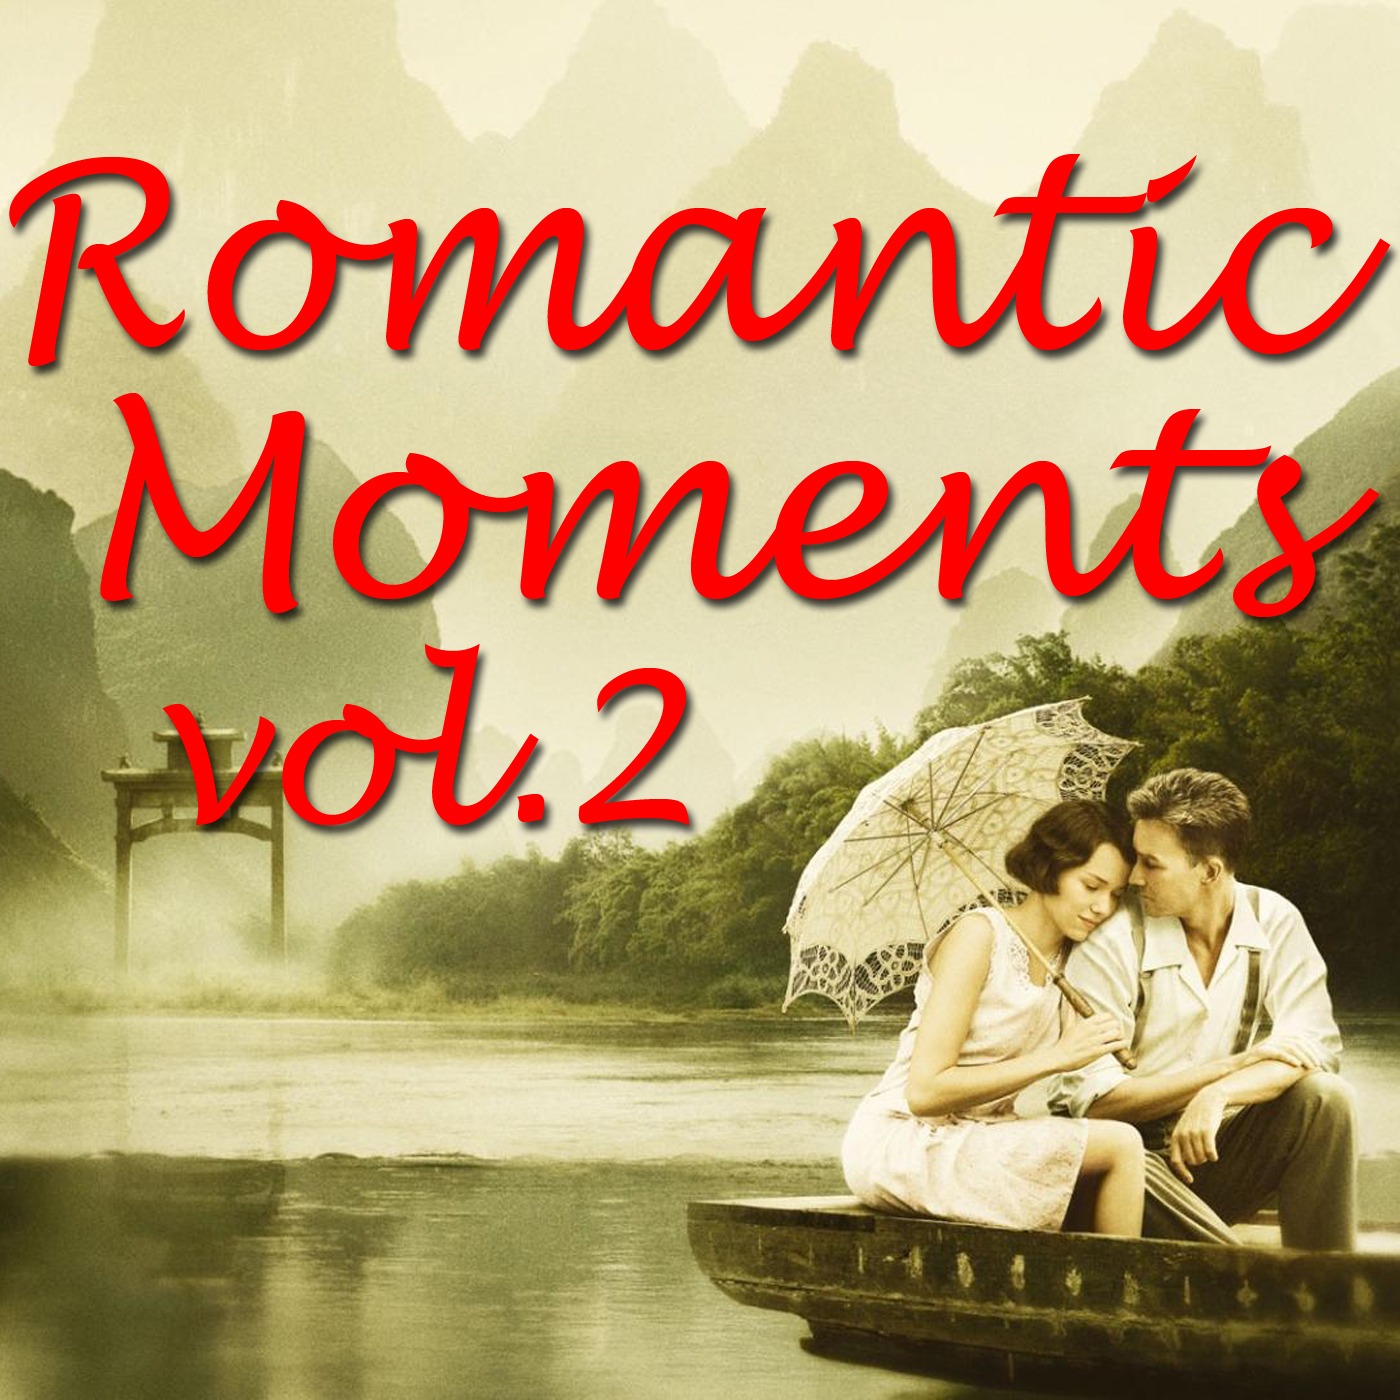 Romantic Moments Vol. 2